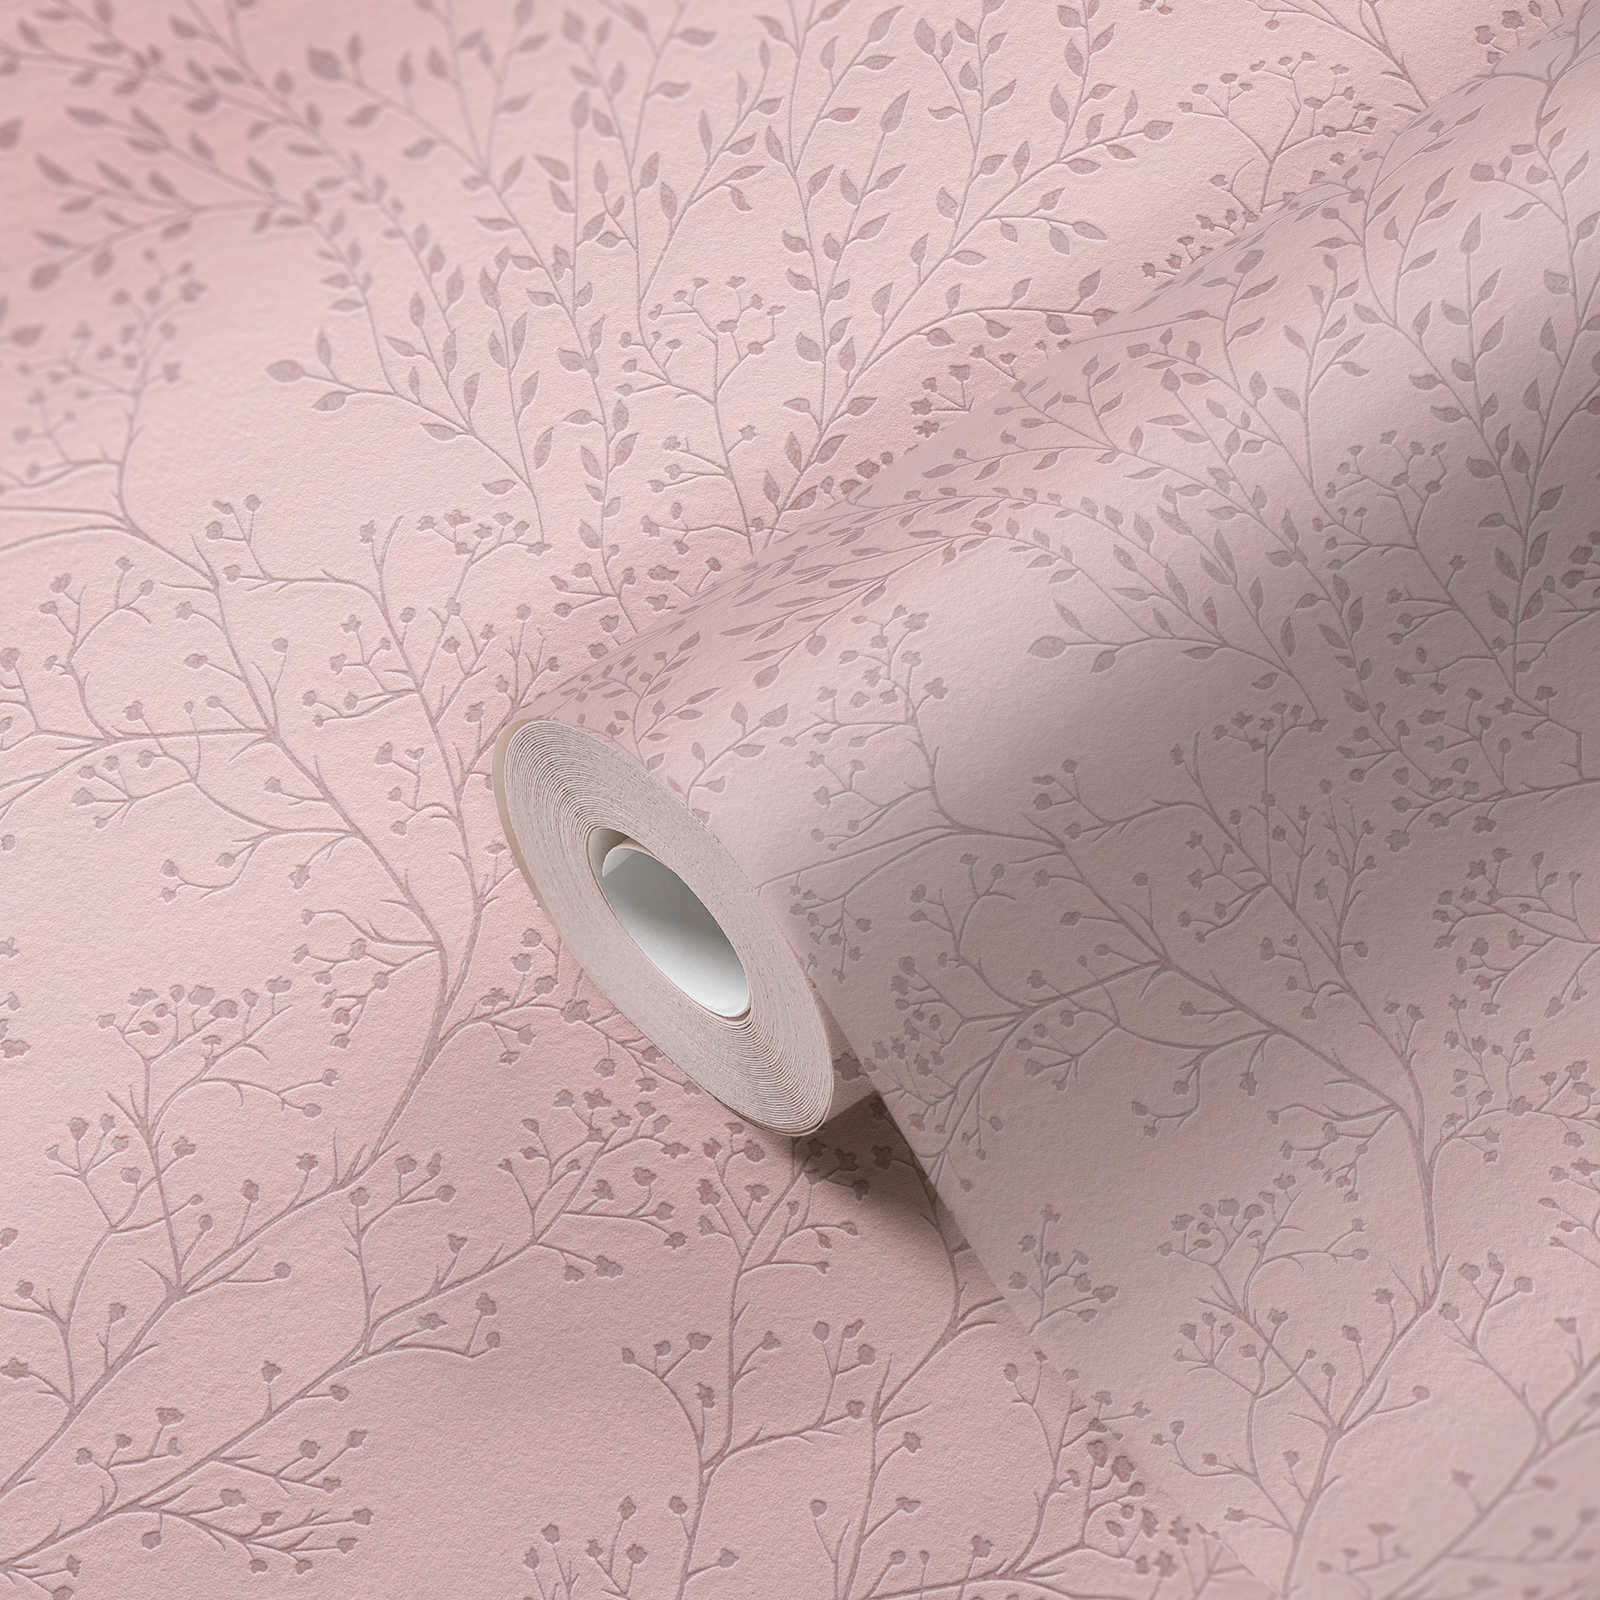             Papier peint uni rose avec motifs de feuilles, brillance & effet structuré
        